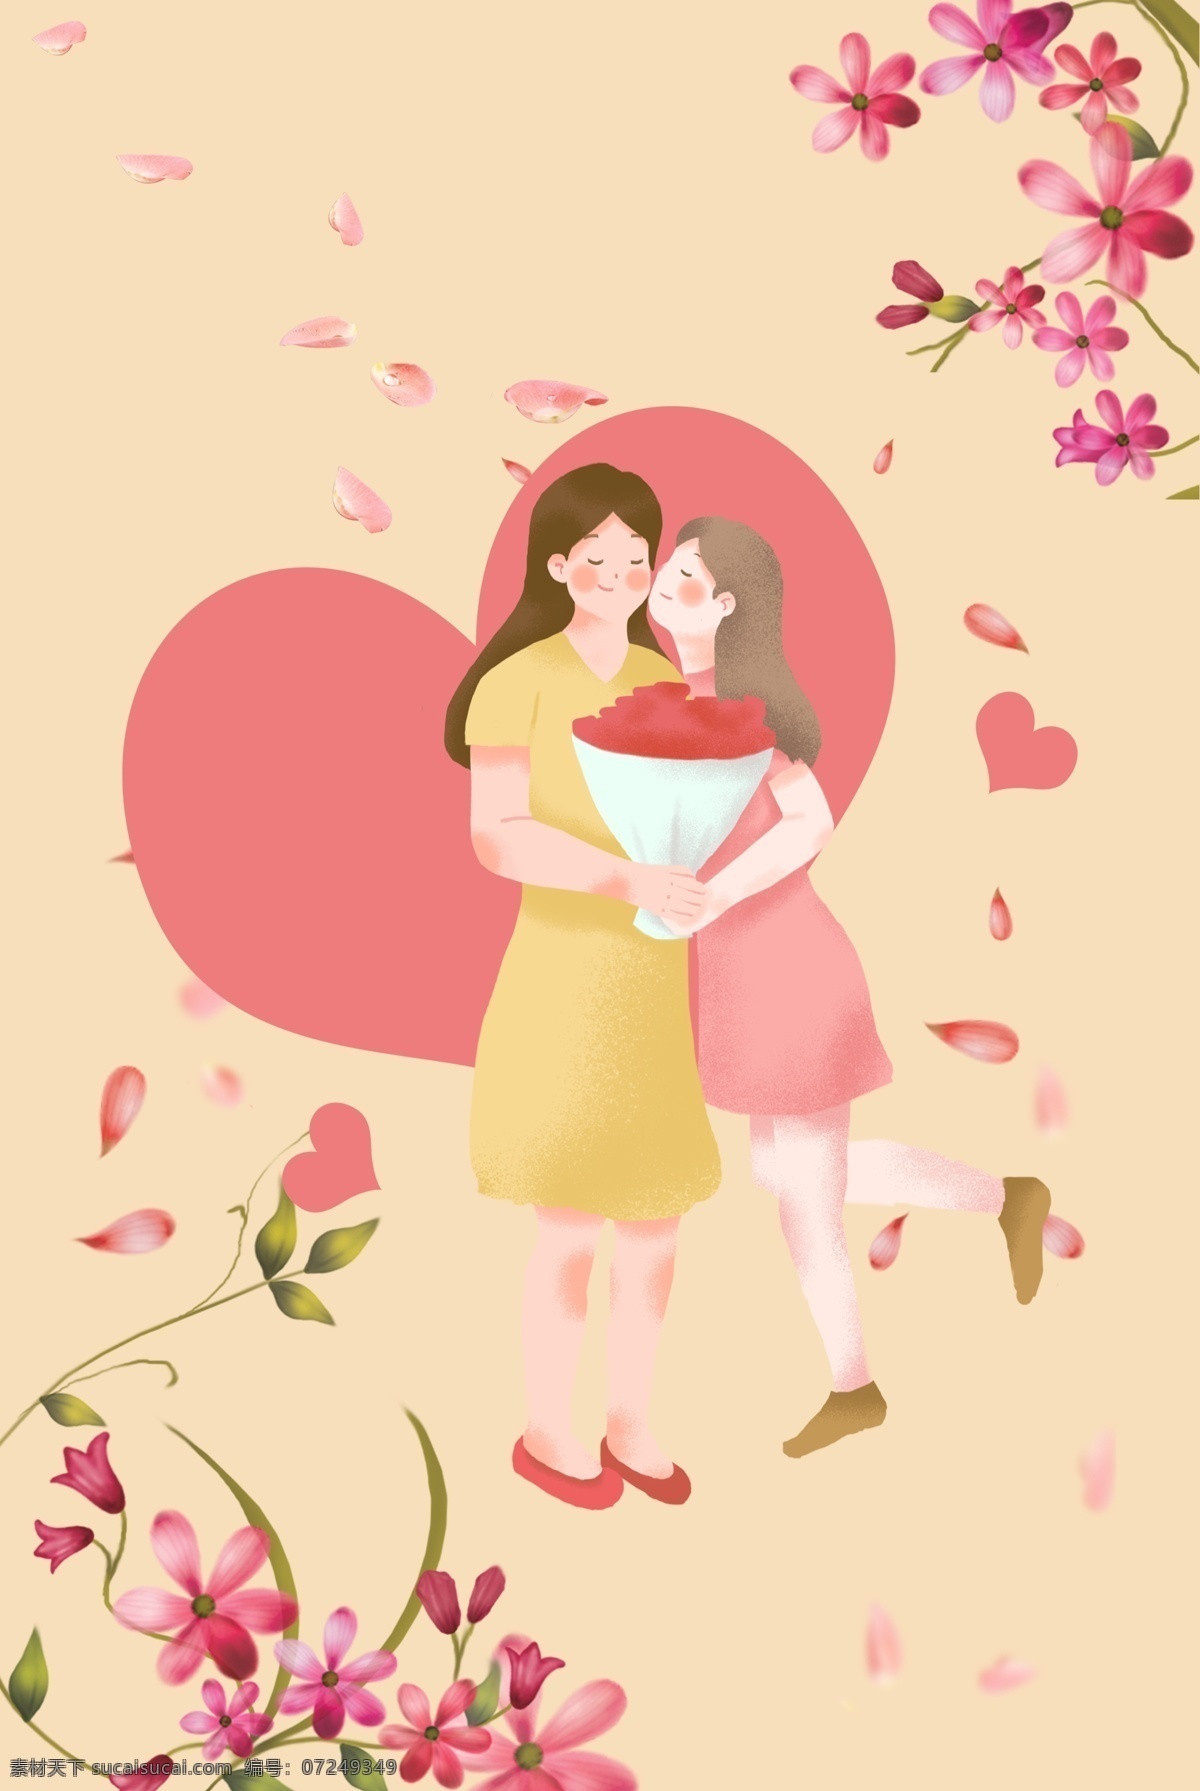 粉色 花卉 爱心 母亲节 海报 背景 温馨 文艺 清新 卡通 手绘 质感 纹理